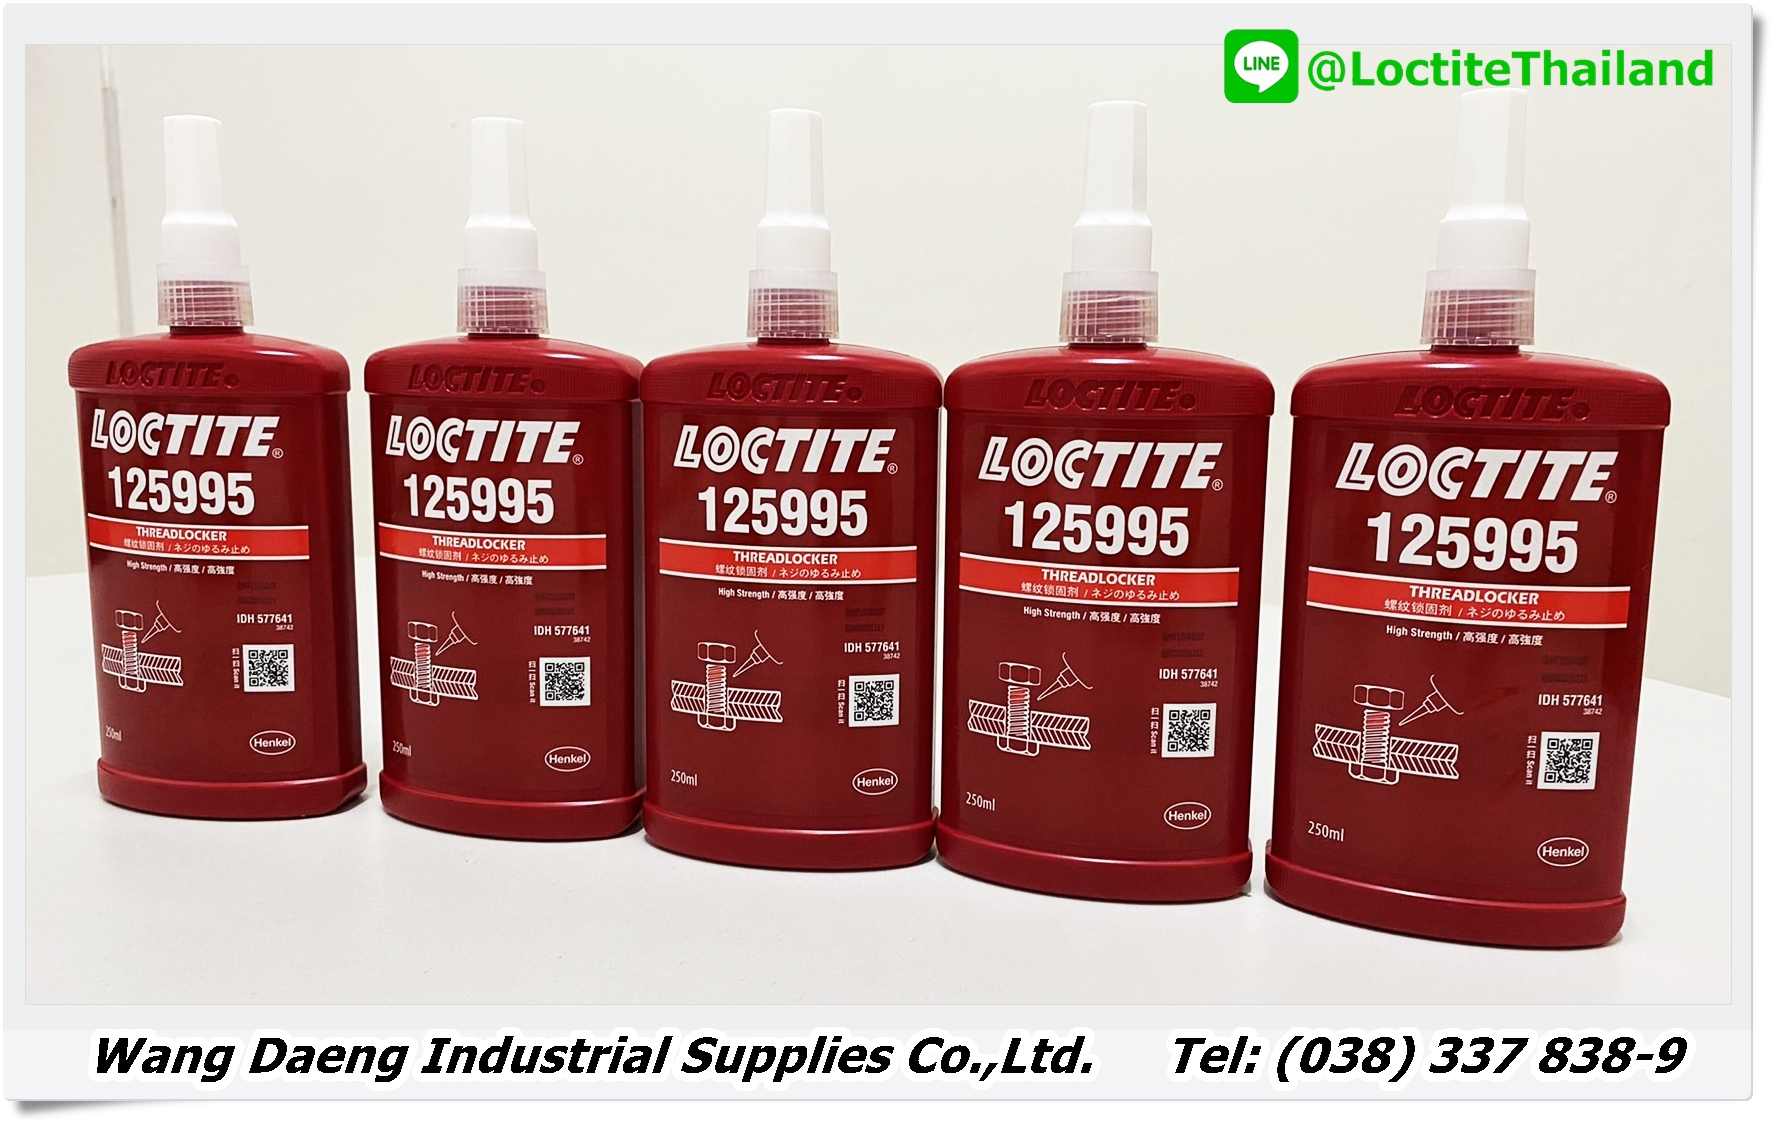 Loctite 125995 IDH 577641